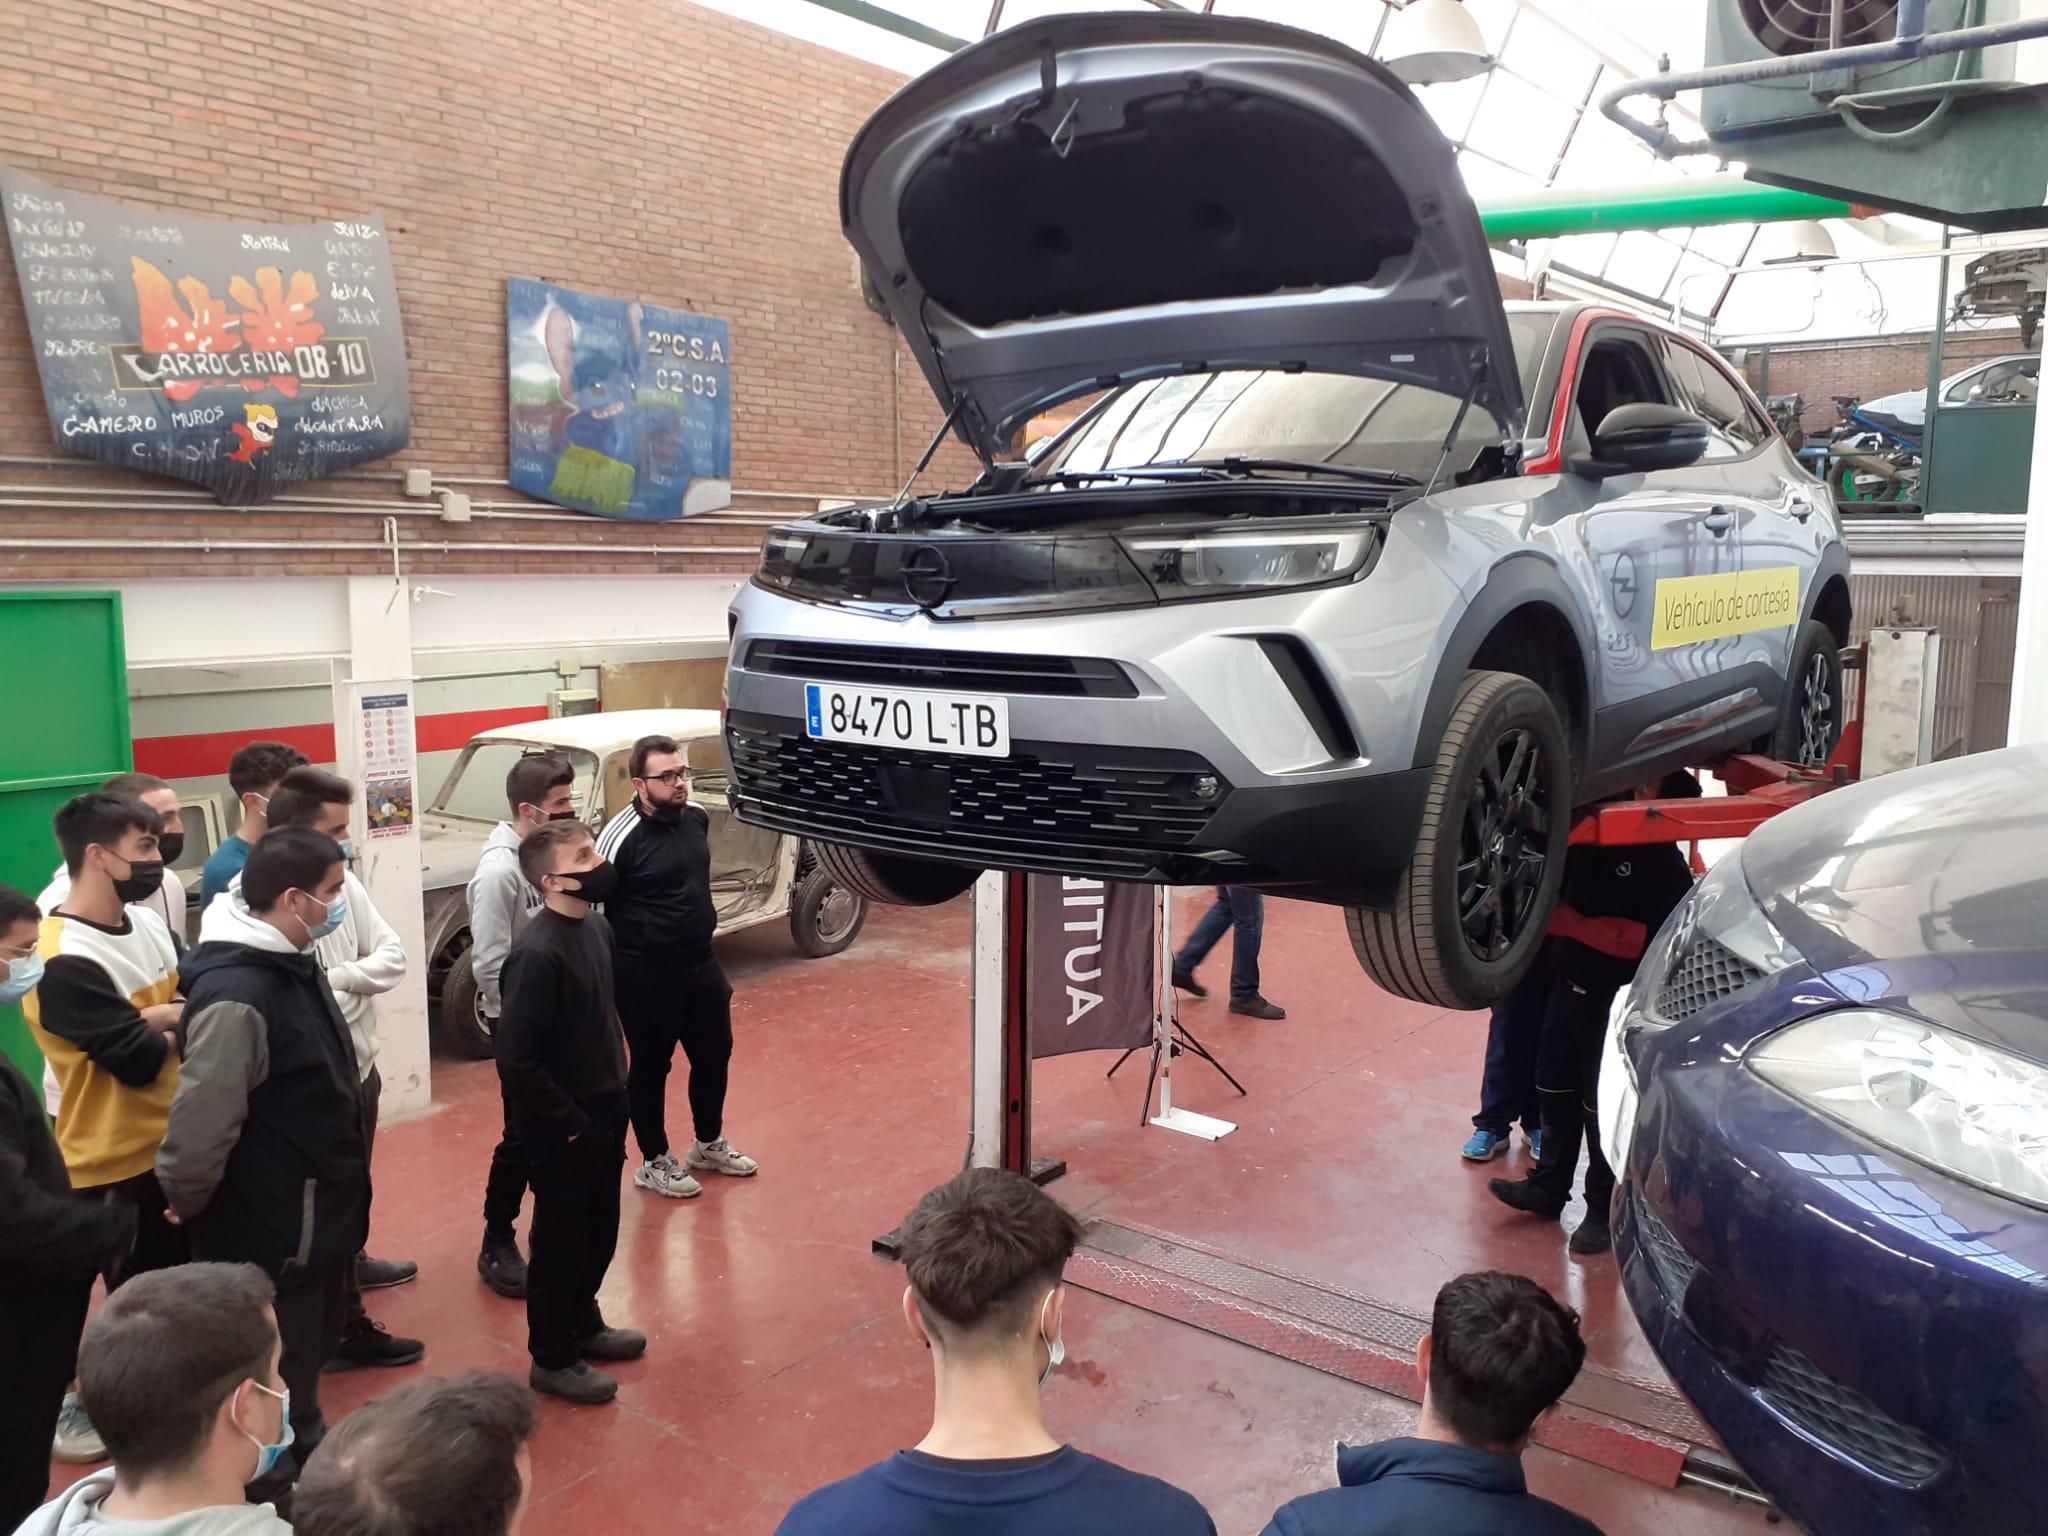 El concesionario oficial Opel en Marbella, visita los centros educativos de la zona para mostrar la innovadora tecnología de los coches eléctricos